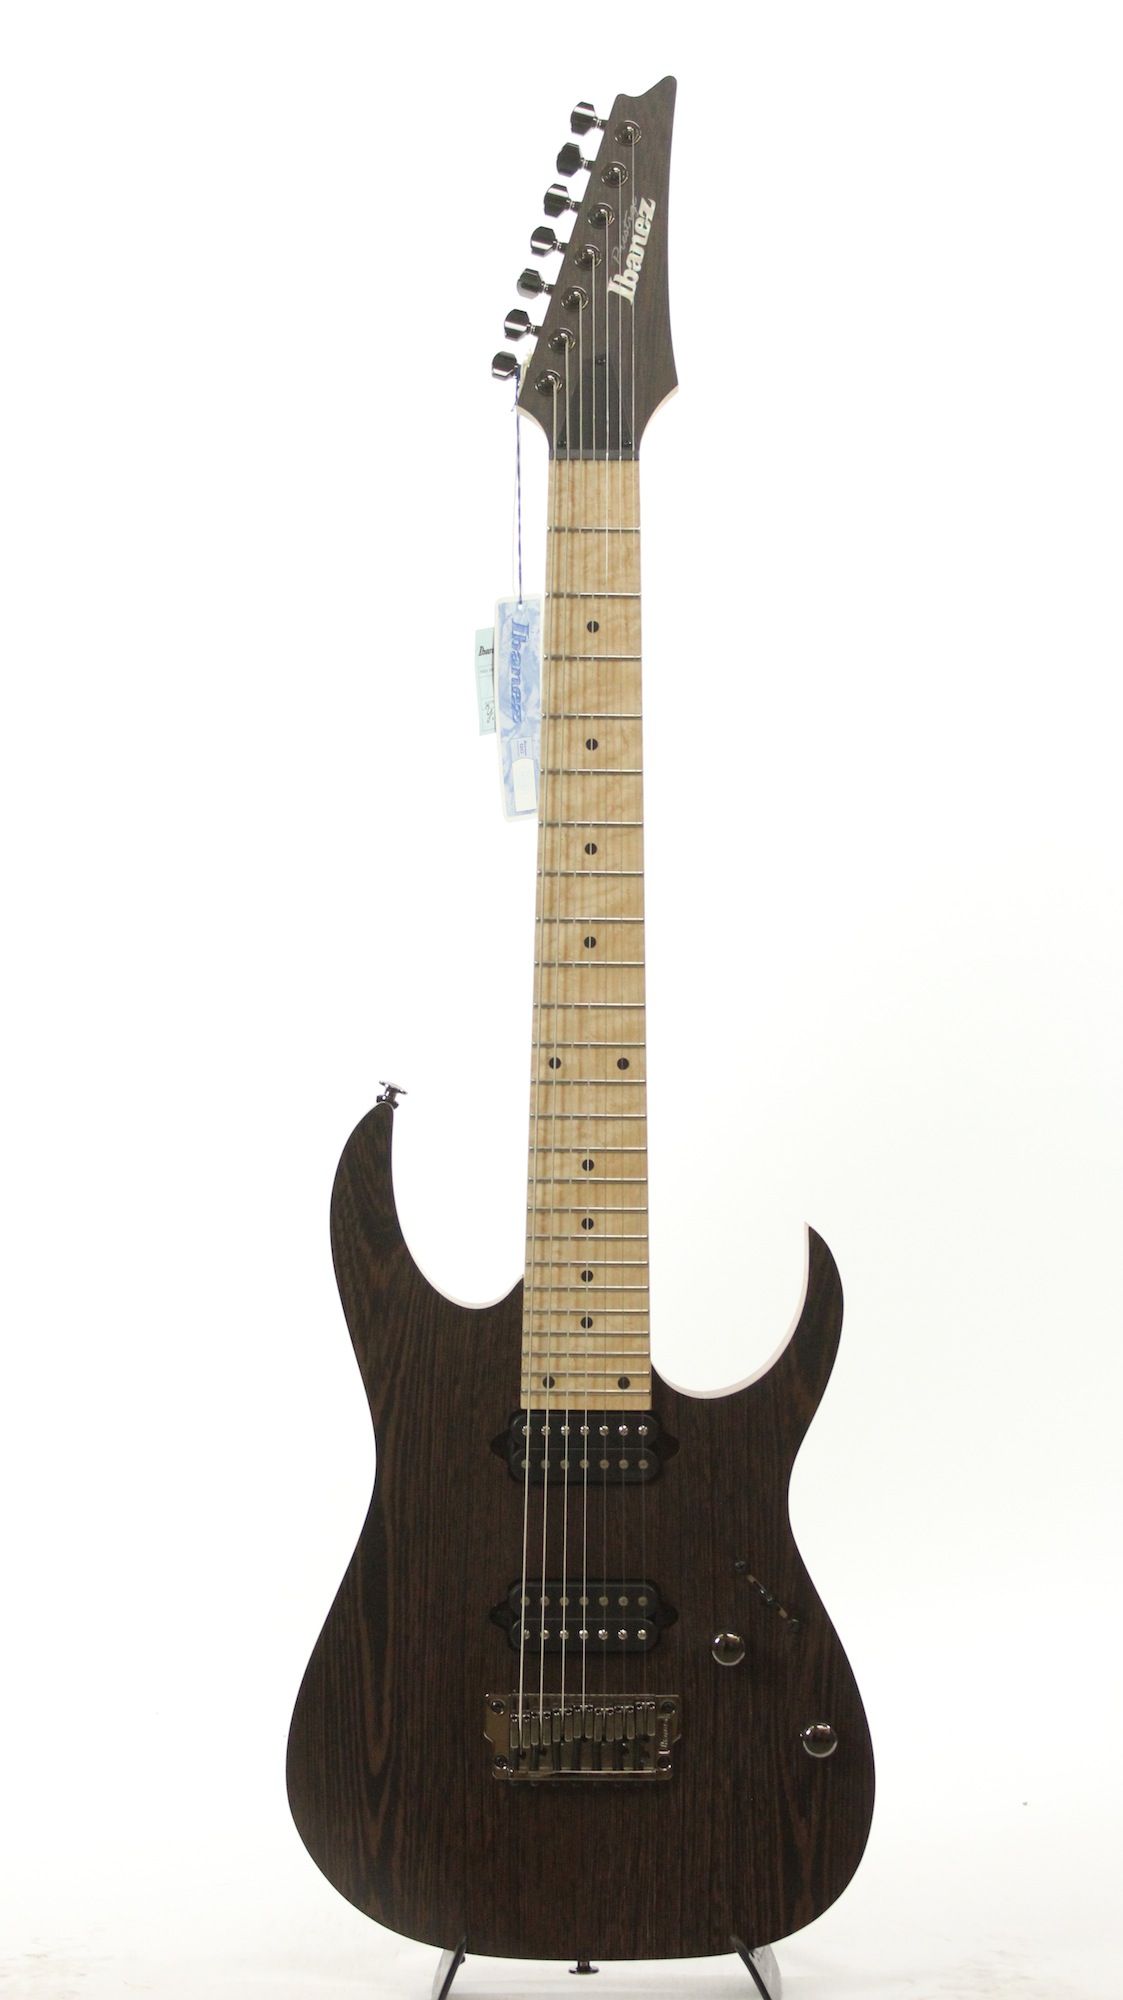 超歓迎された ibanez prestige RG752wmfx-oil 日本製 エレキギター